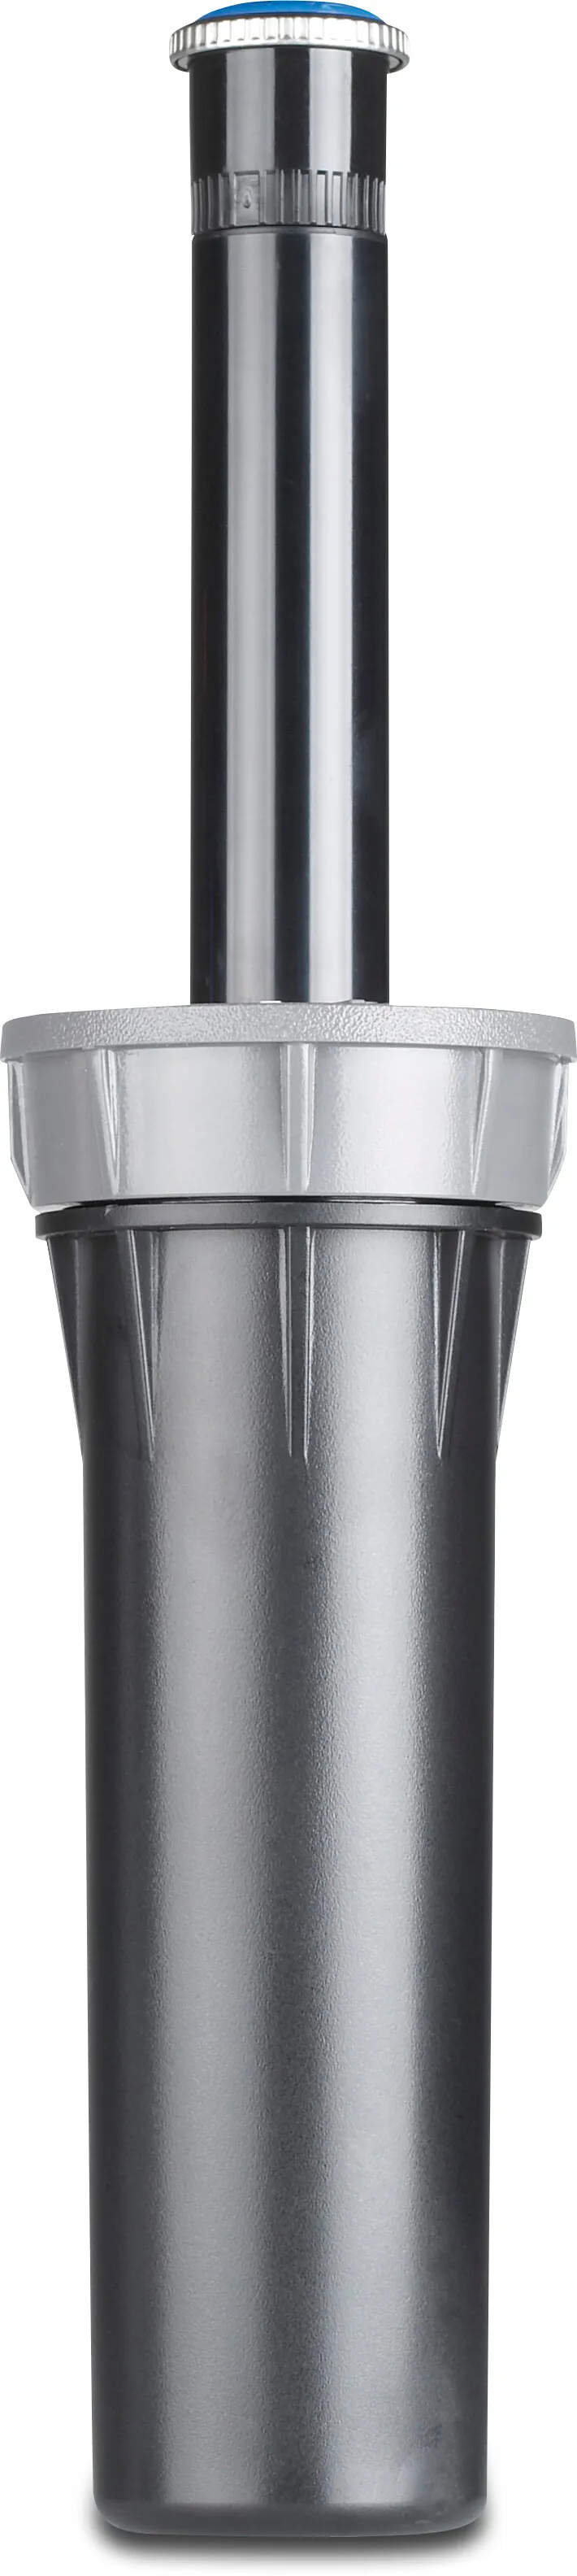 Hunter Sprinker bas plast 1/2" invändig gänga 2.8bar 40°-360° svart type Pro Spray-00-PRS40